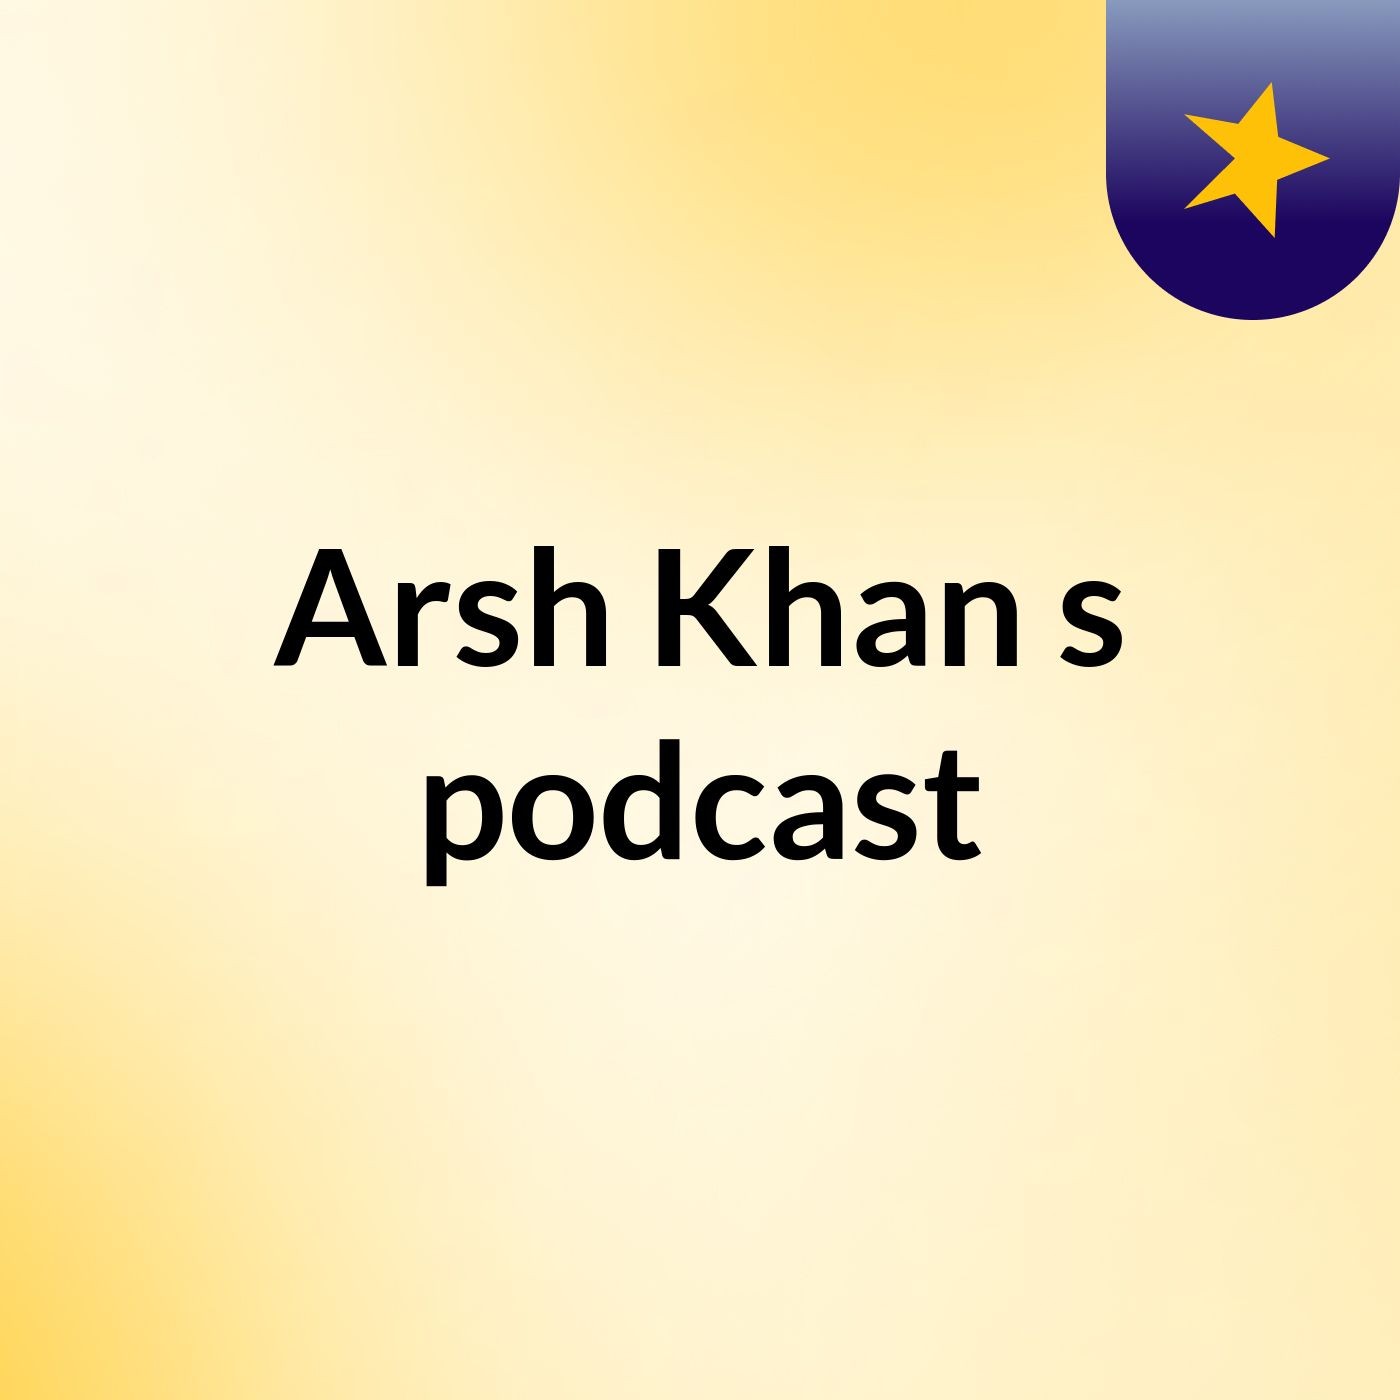 Episode 9 - Arsh Khan's podcast